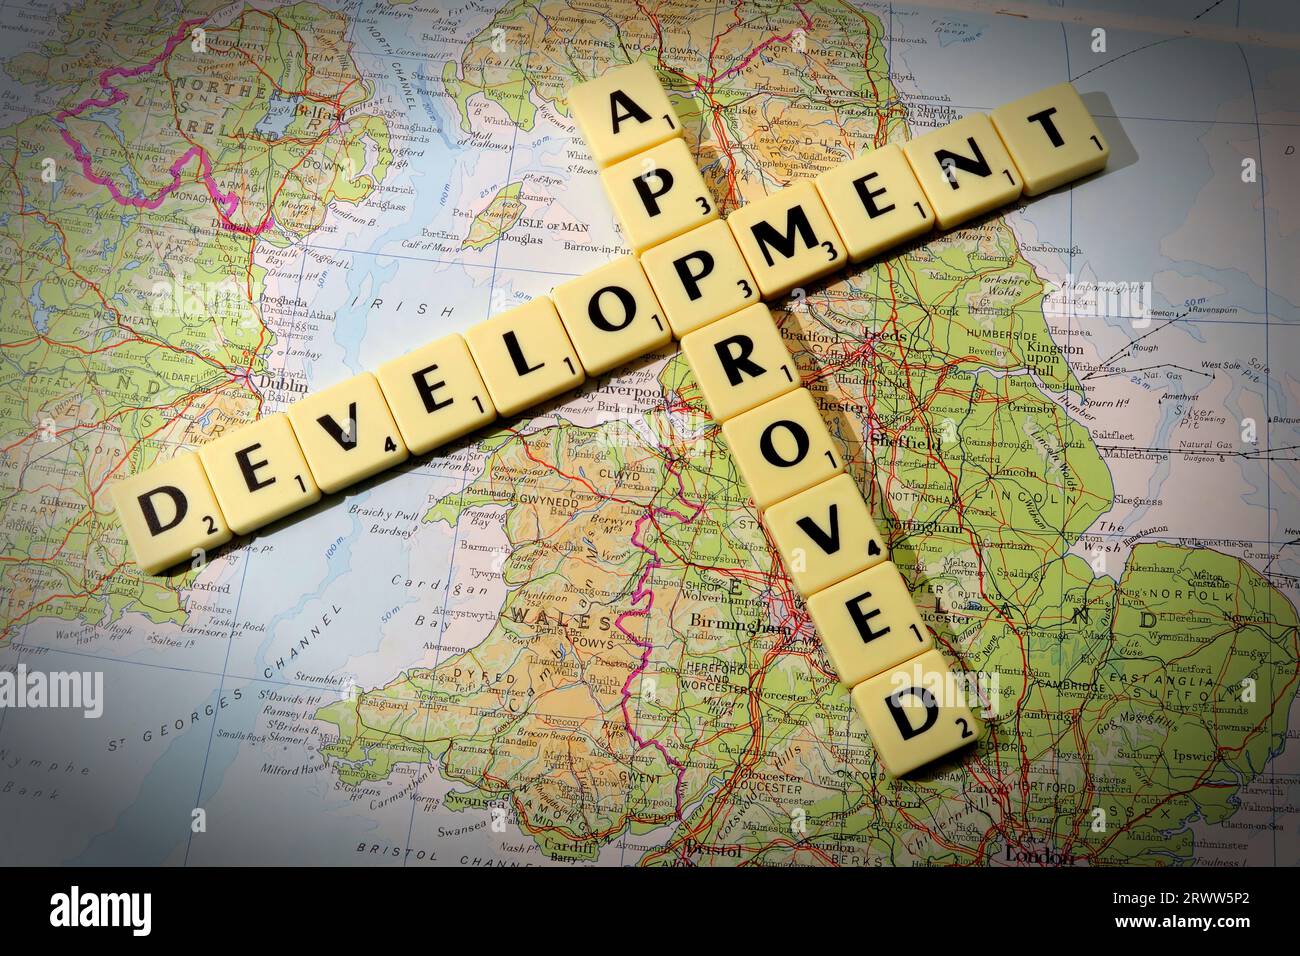 Entwicklung genehmigt in Scrabble Buchstaben und Wörter auf einer Karte von England - lokale Entwicklung und Gebäudekontrolle Stockfoto